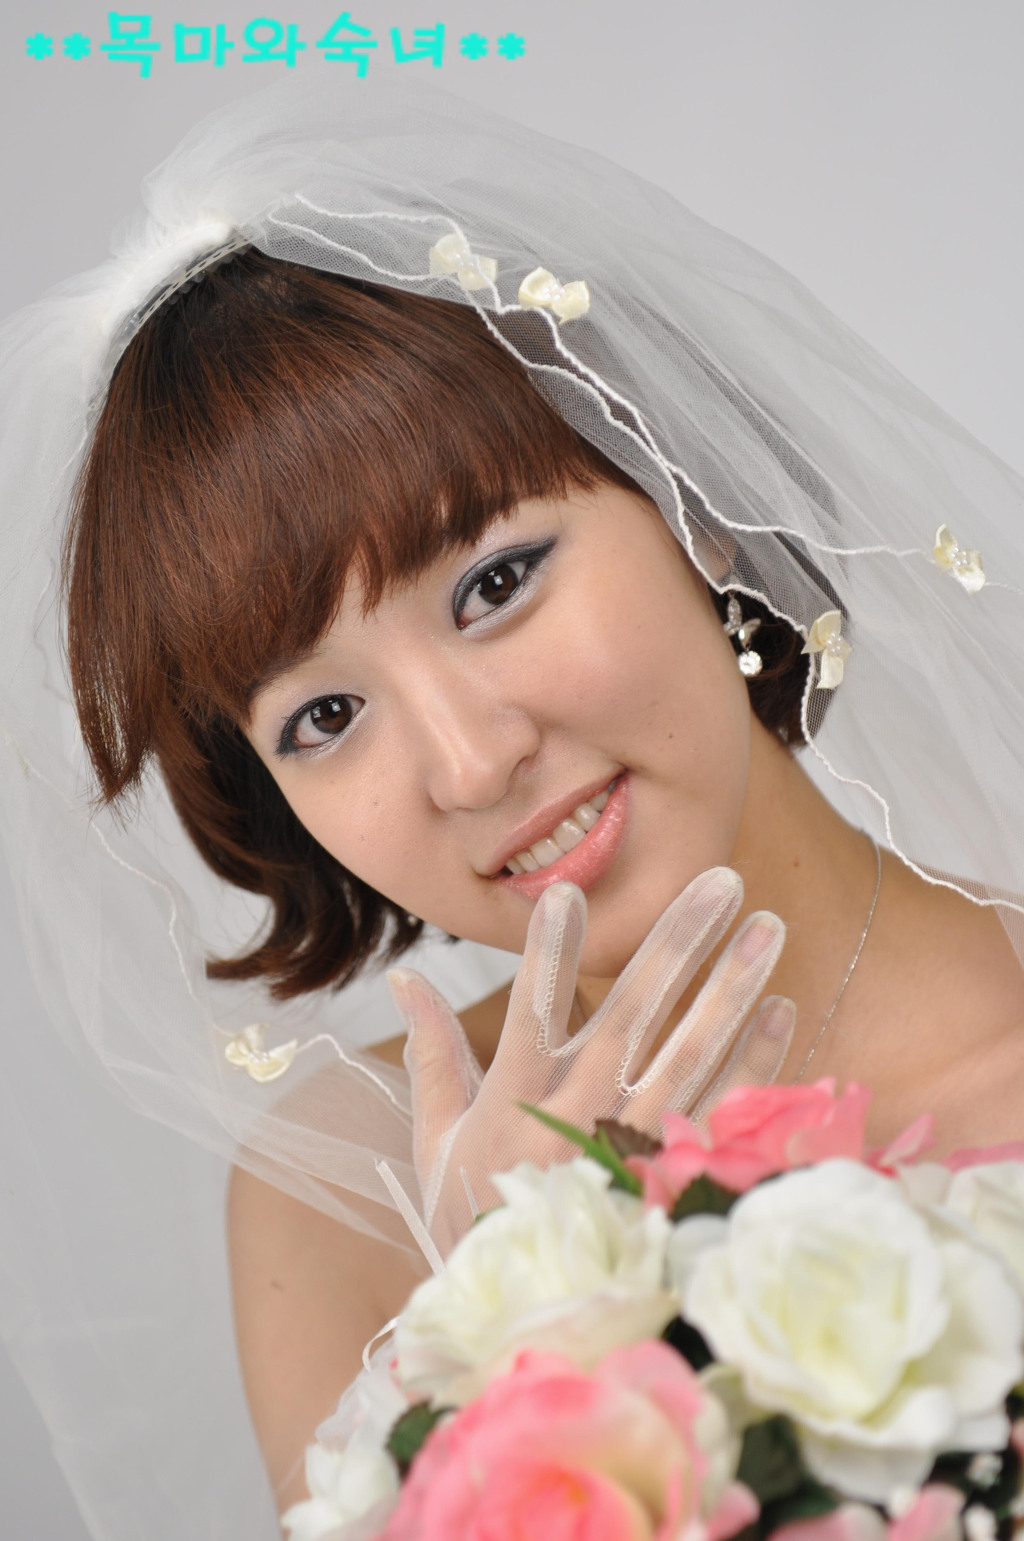 Yoon Joo Ha - Beautiful Wedding Fashion